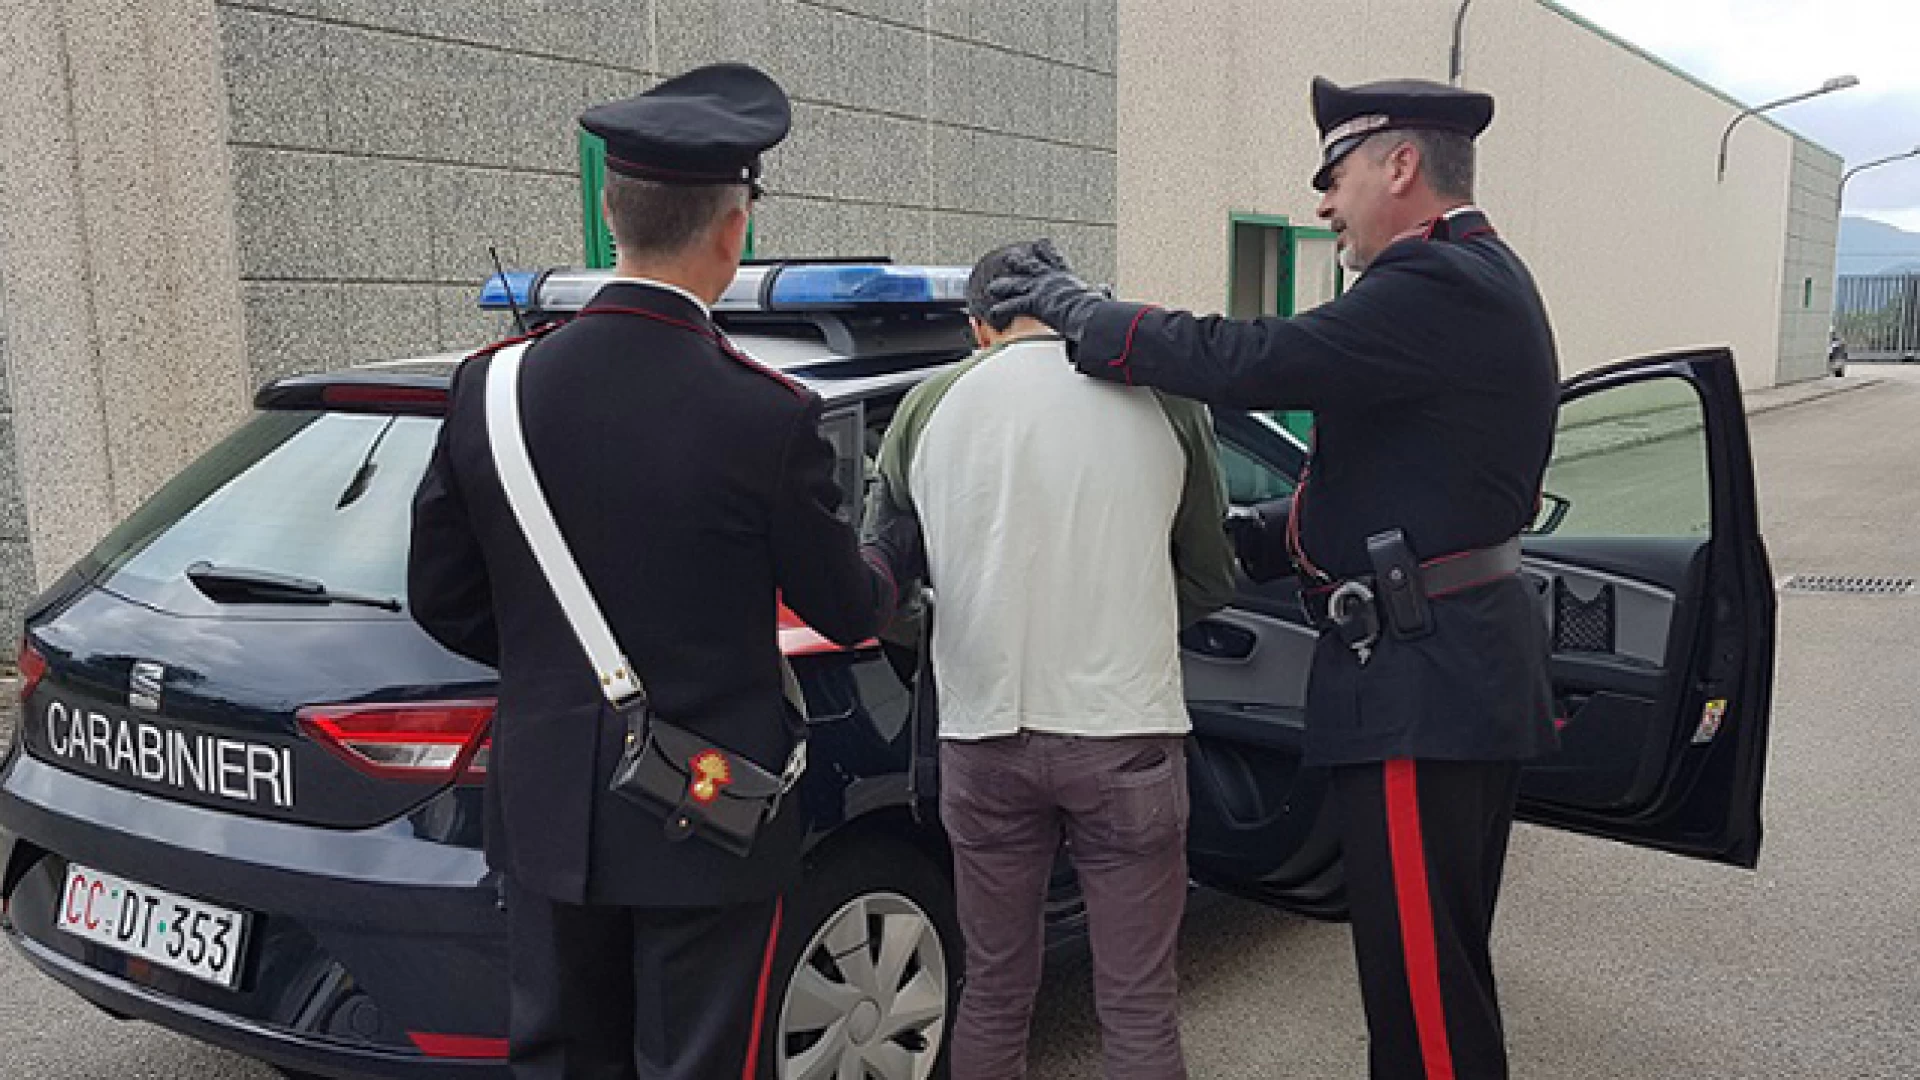 Venafro: 37enne arrestato dai Carabinieri per reati in materia di stupefacenti. Sconterà sei anni di reclusione.